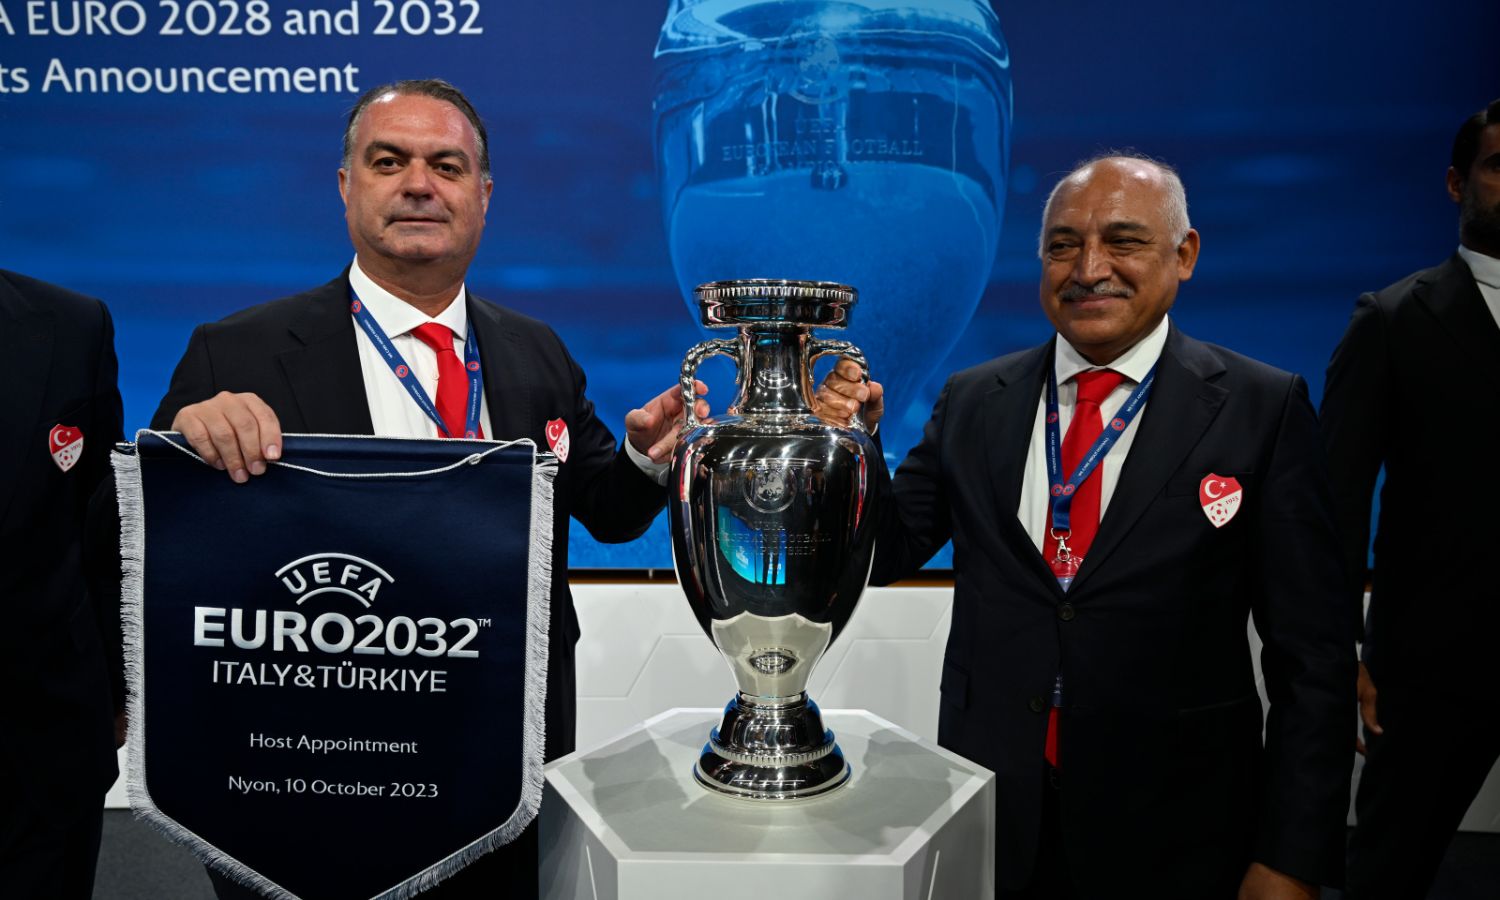 ممثلون من تركيا مع إيطاليا خلال إعلان المدينة المضيفة لكأس الأمم الأوروبية عامي 2028 و2032 في مقر الاتحاد الأوروبي لكرة القدم، بسويسرا- 10 تشرين الأول 2023 (UEFA)